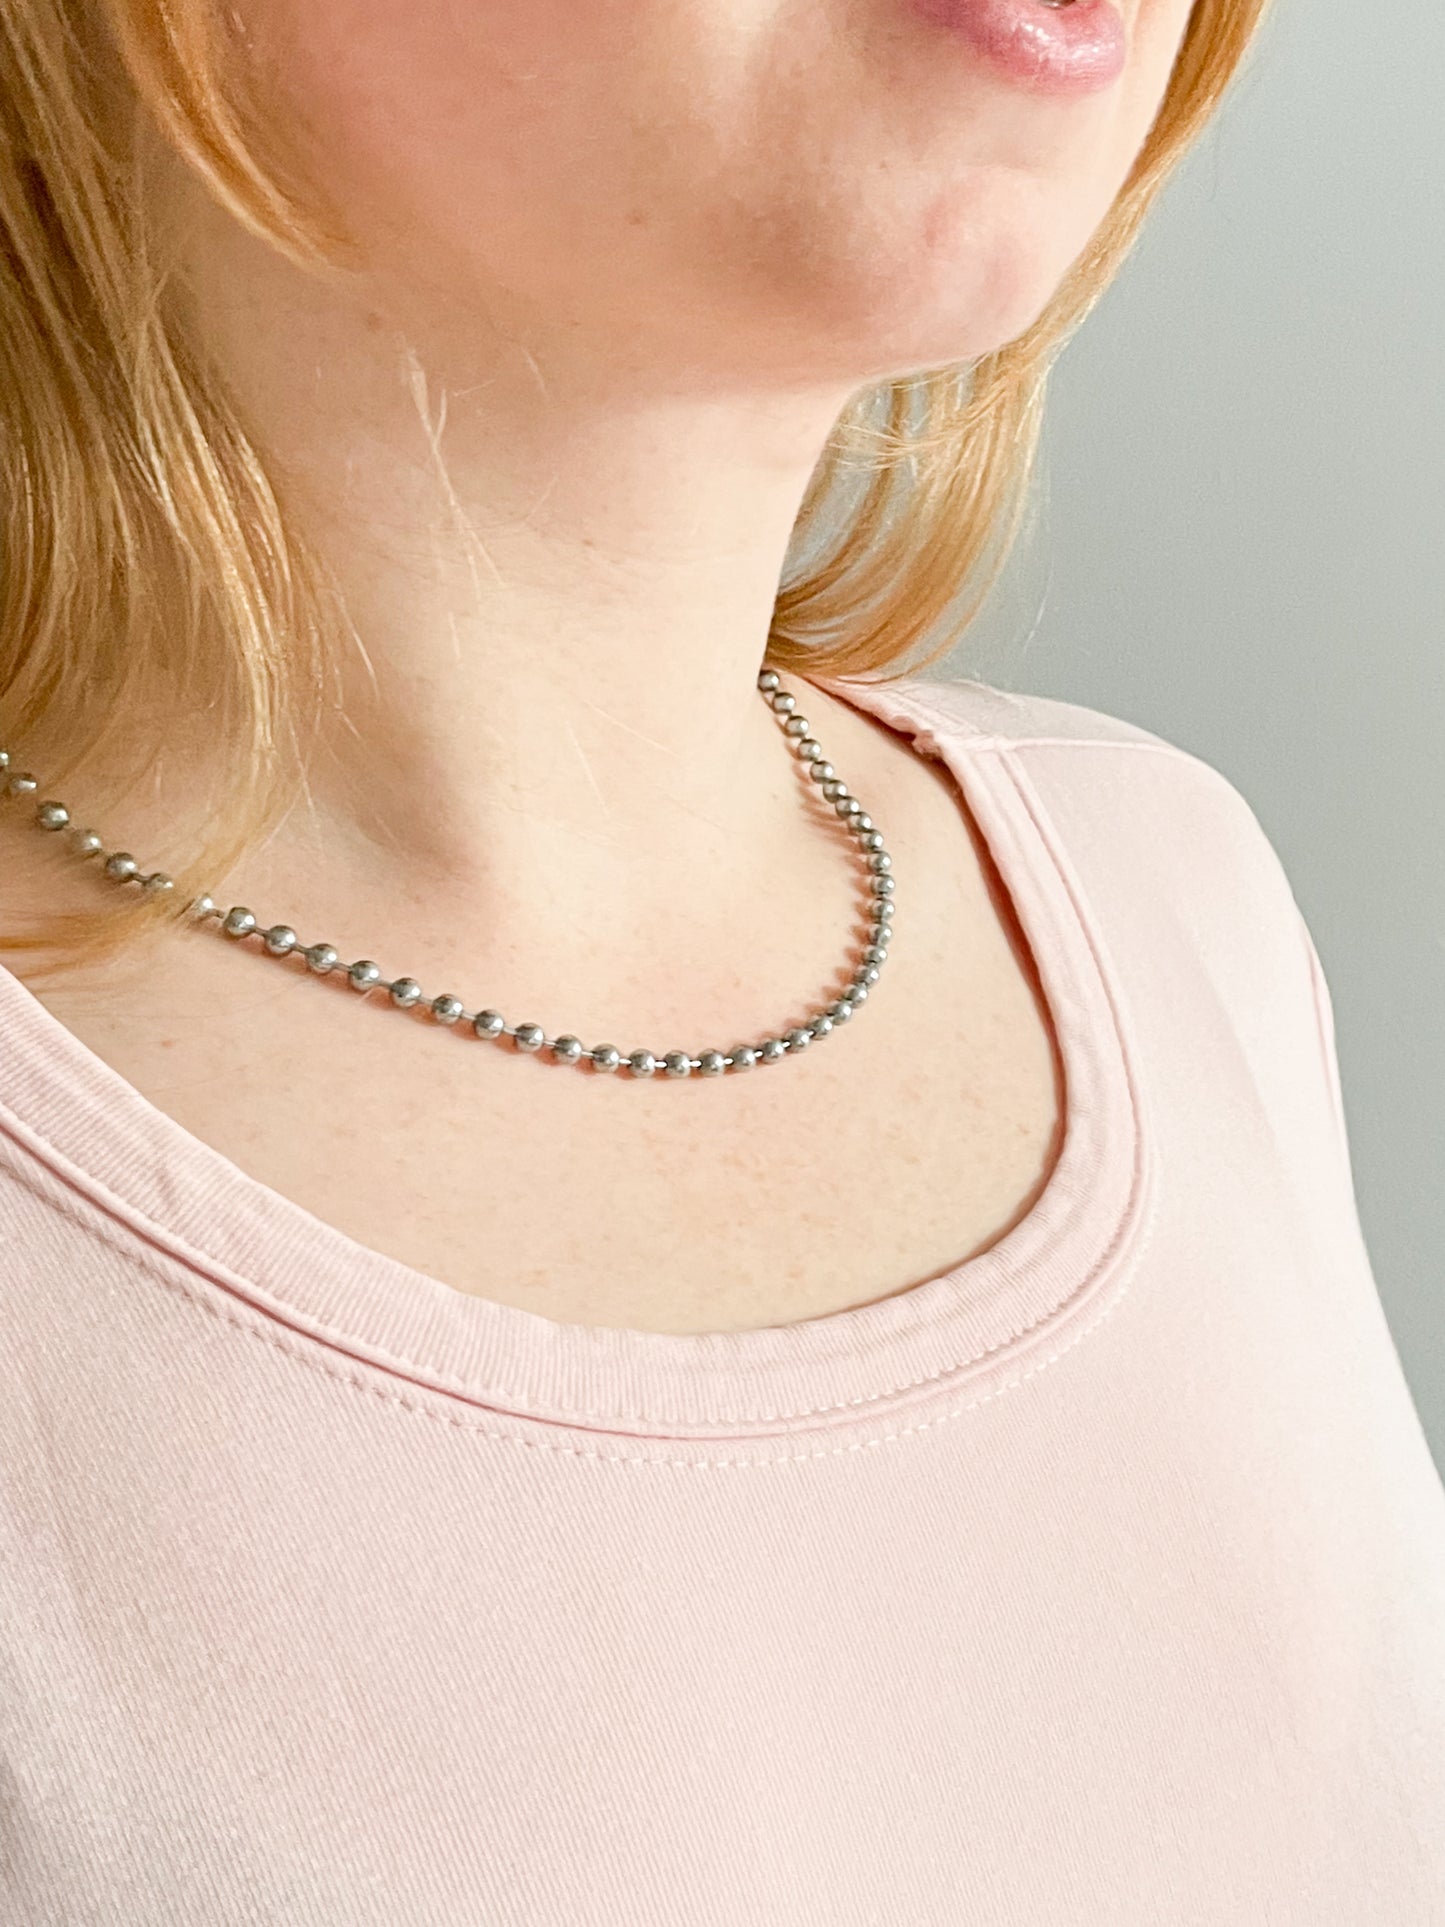 Silver Mini Ball Chain Necklace - 16"